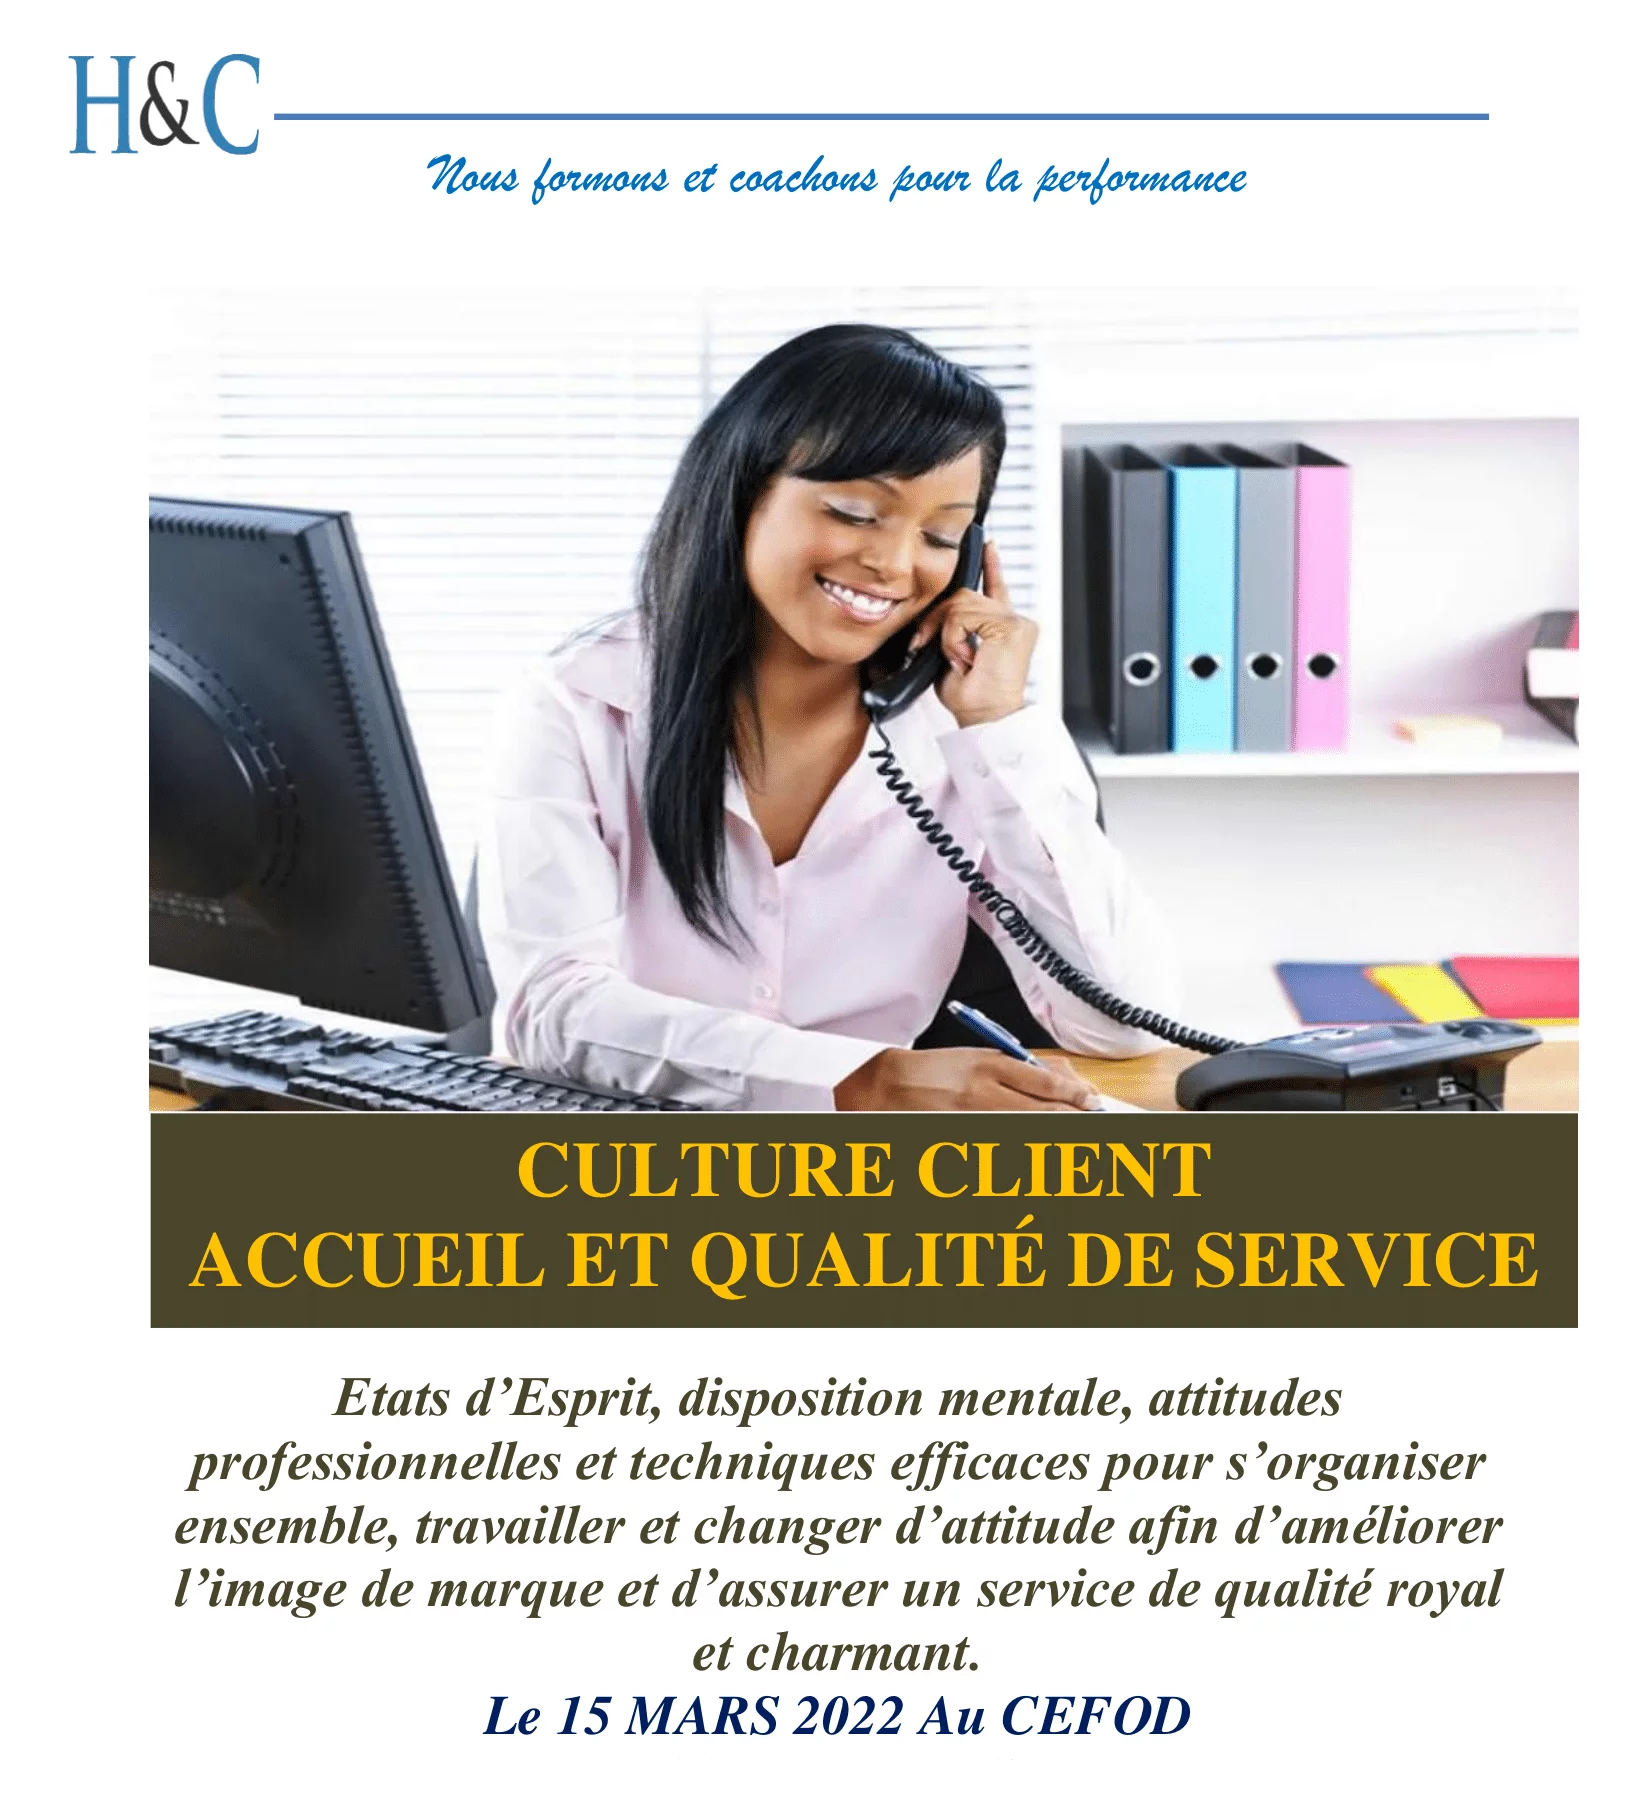 H&C organise un atelier de formation sur la Culture Client et Qualité de service au CEFOD, N’Djamena, Tchad